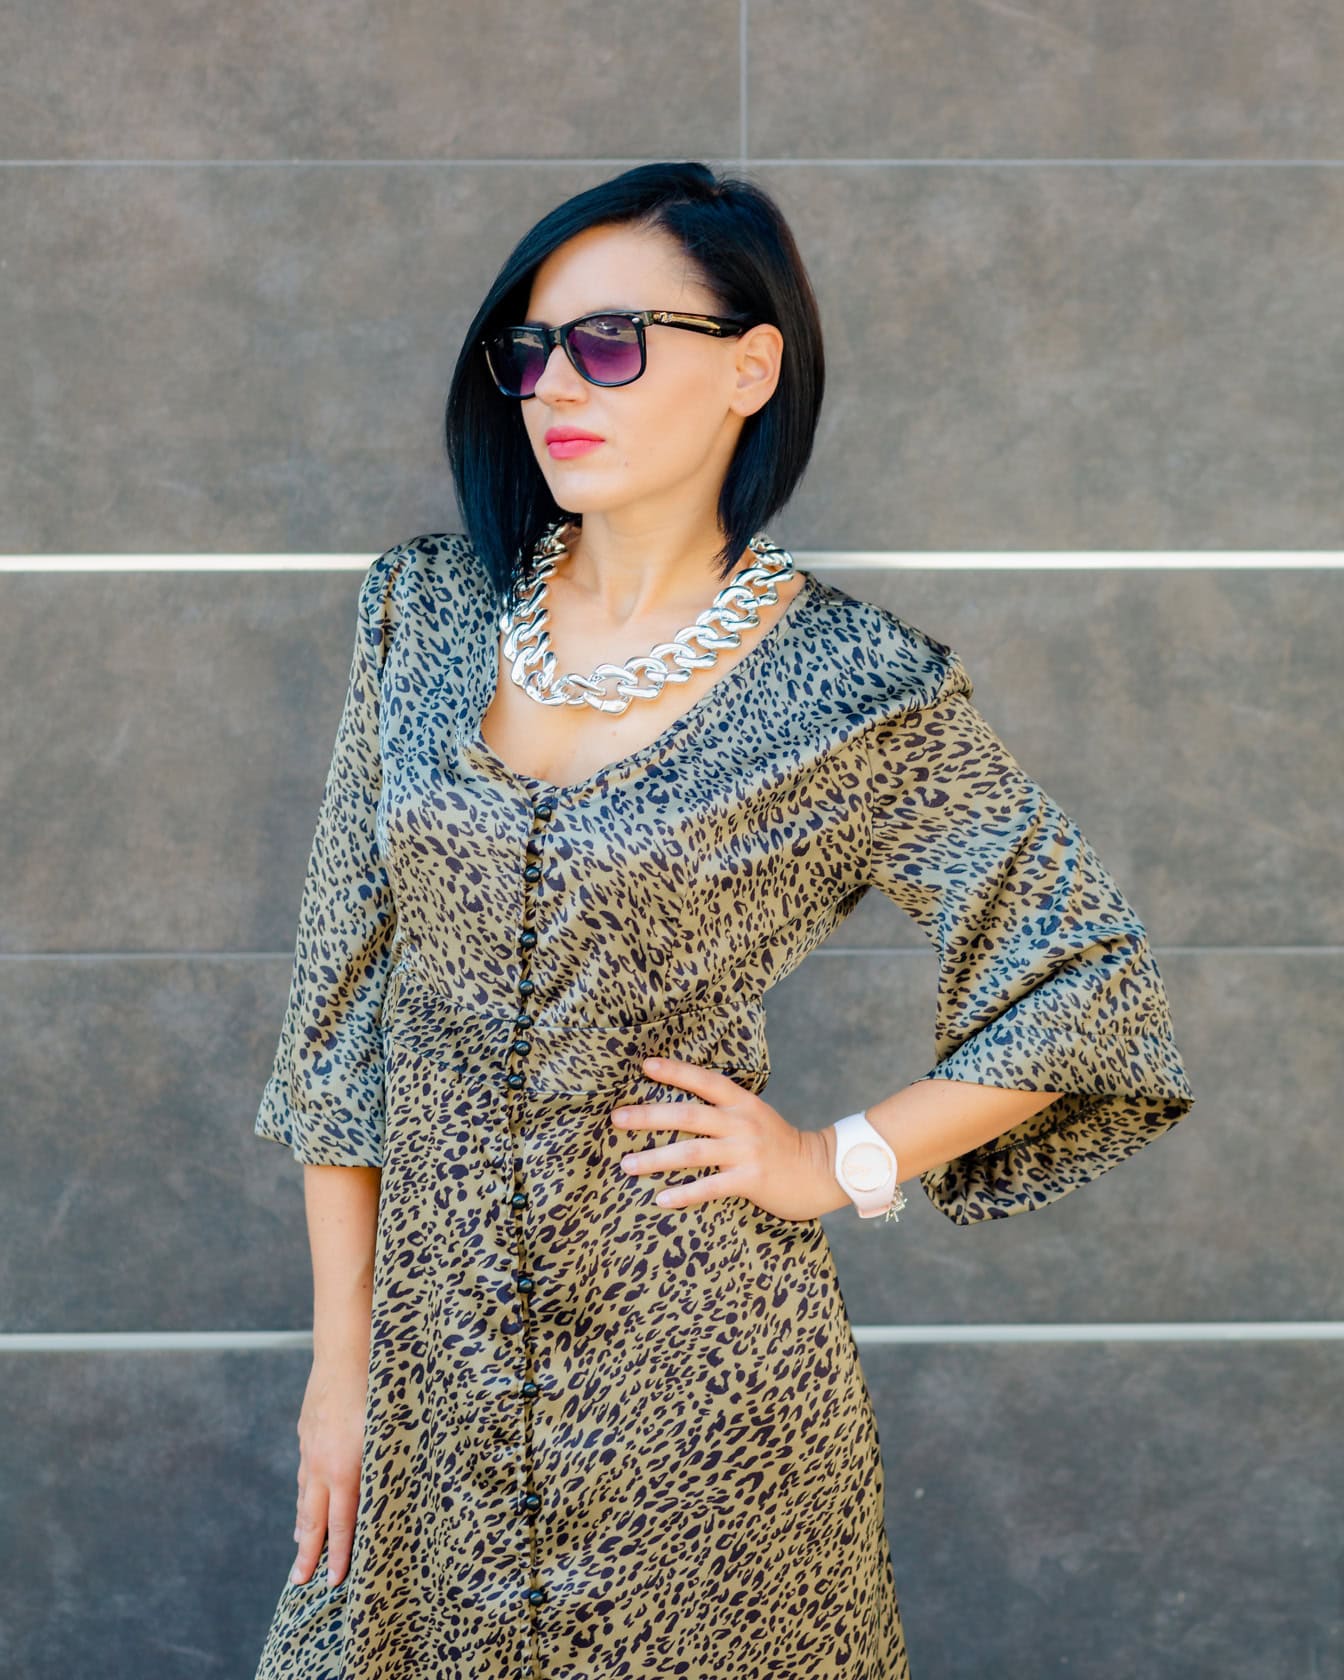 Žena pózuje v šatech s leopardím vzorem a slunečními brýlemi